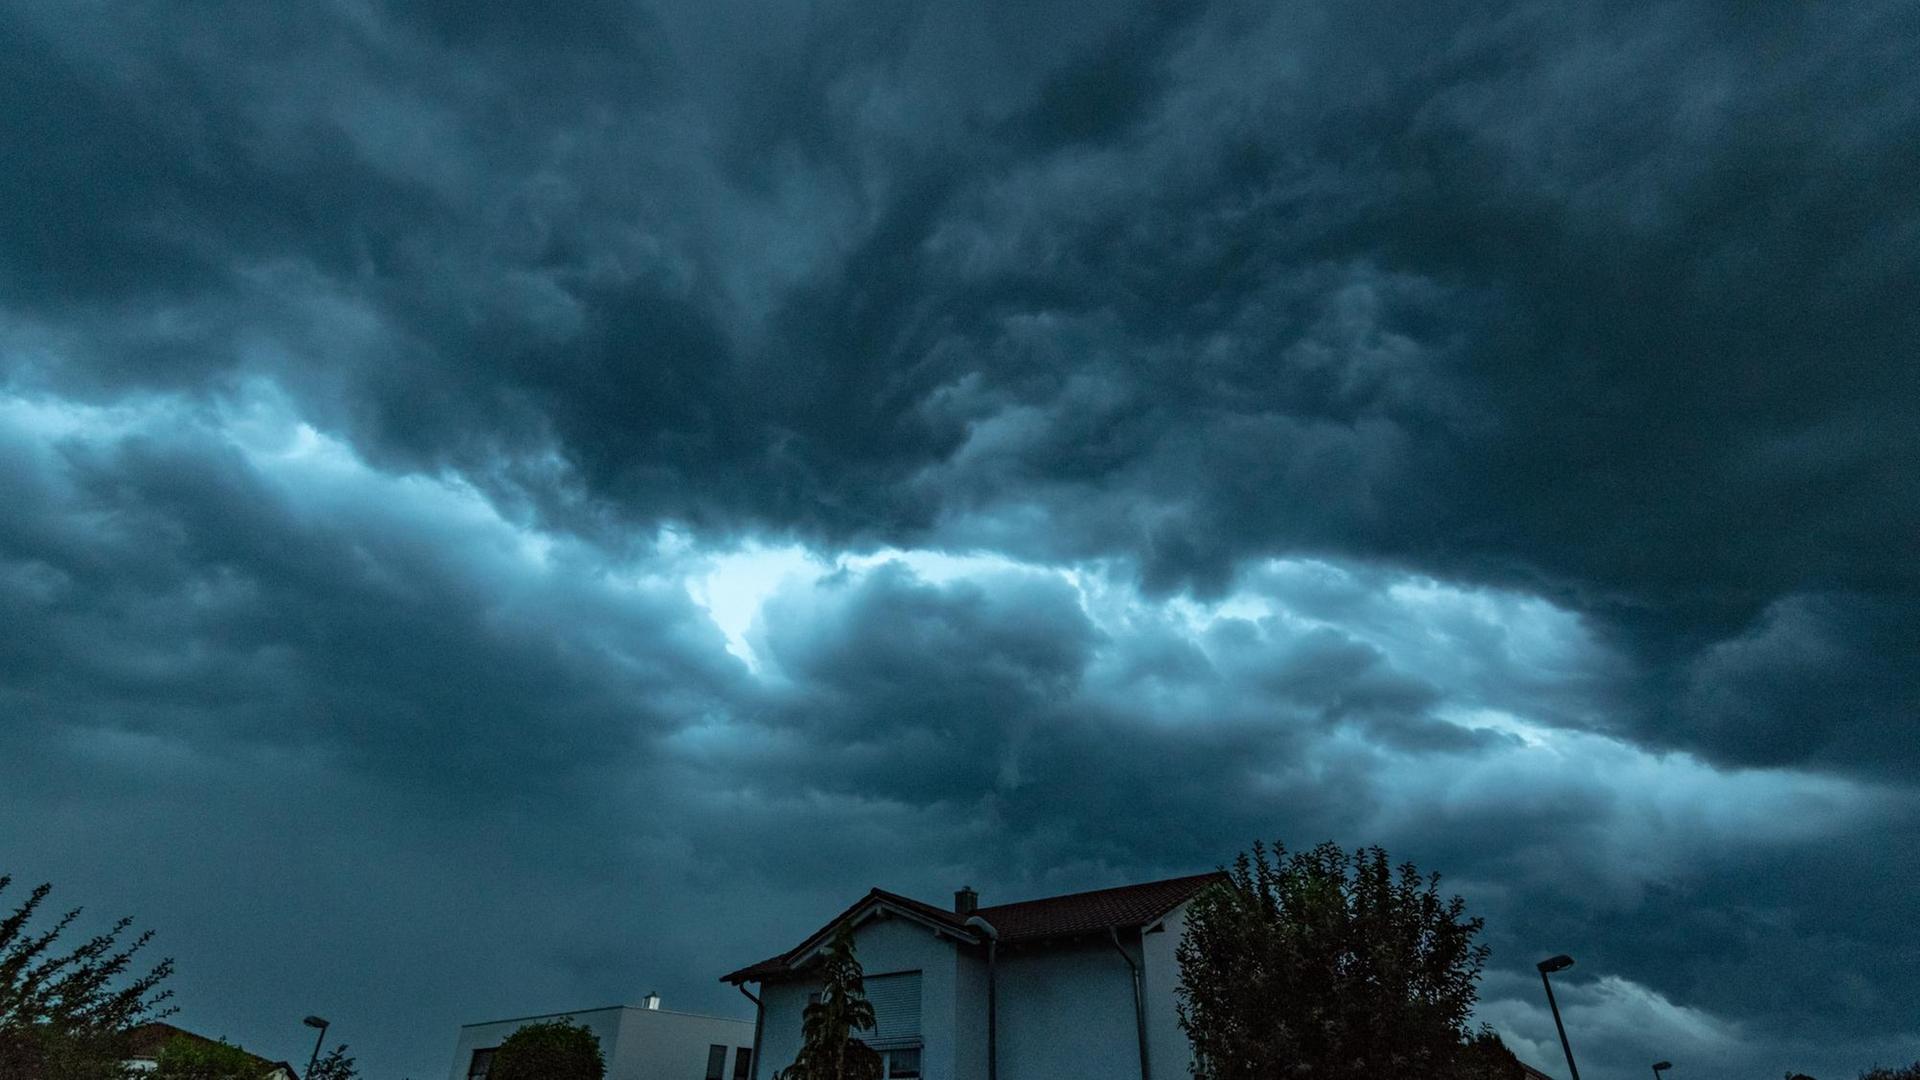 Bayern, Straubing: Dunkle Gewitterwolken ziehen im Abendlicht über ein Wohngebiet.